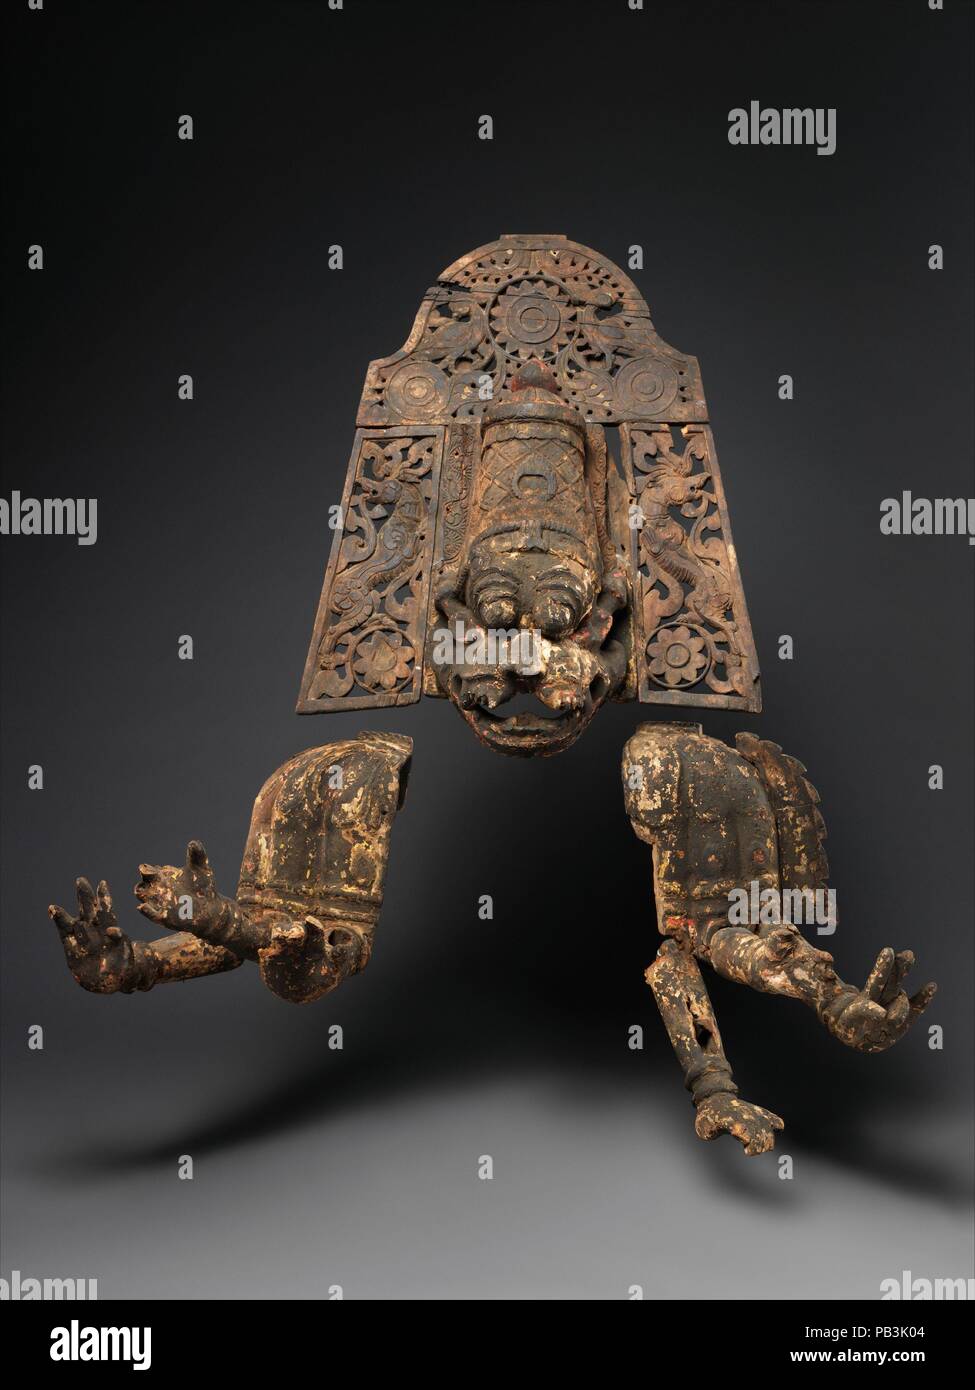 Narasimha, Vishnu's Man-Lion Avatar. Cultura: il Sud dell India, nello Stato del Tamil Nadu, probabilmente Thanjavur distretto. Dimensioni: H. (con supporto) 47 1/2 in. (120.7 cm); W. 40 a. (101,6 cm ); D. 20 a. (50,8 cm). Data: ca. 1700-1750. In questa maschera di straordinario ensemble, la testa coronata di Narasimha è accompagnata da un corpo vestito con sei bracci articolati. La fase in presenza dell'attore che indossava questo ensemble, completamente assorbito nel ruolo del feroce man-lion avatar, sarebbe stata eccezionale quando visto sul fiocamente illuminate stadio durante la notte le prestazioni. La vernice su questa maschera è stata aggiornata ogni anno Foto Stock